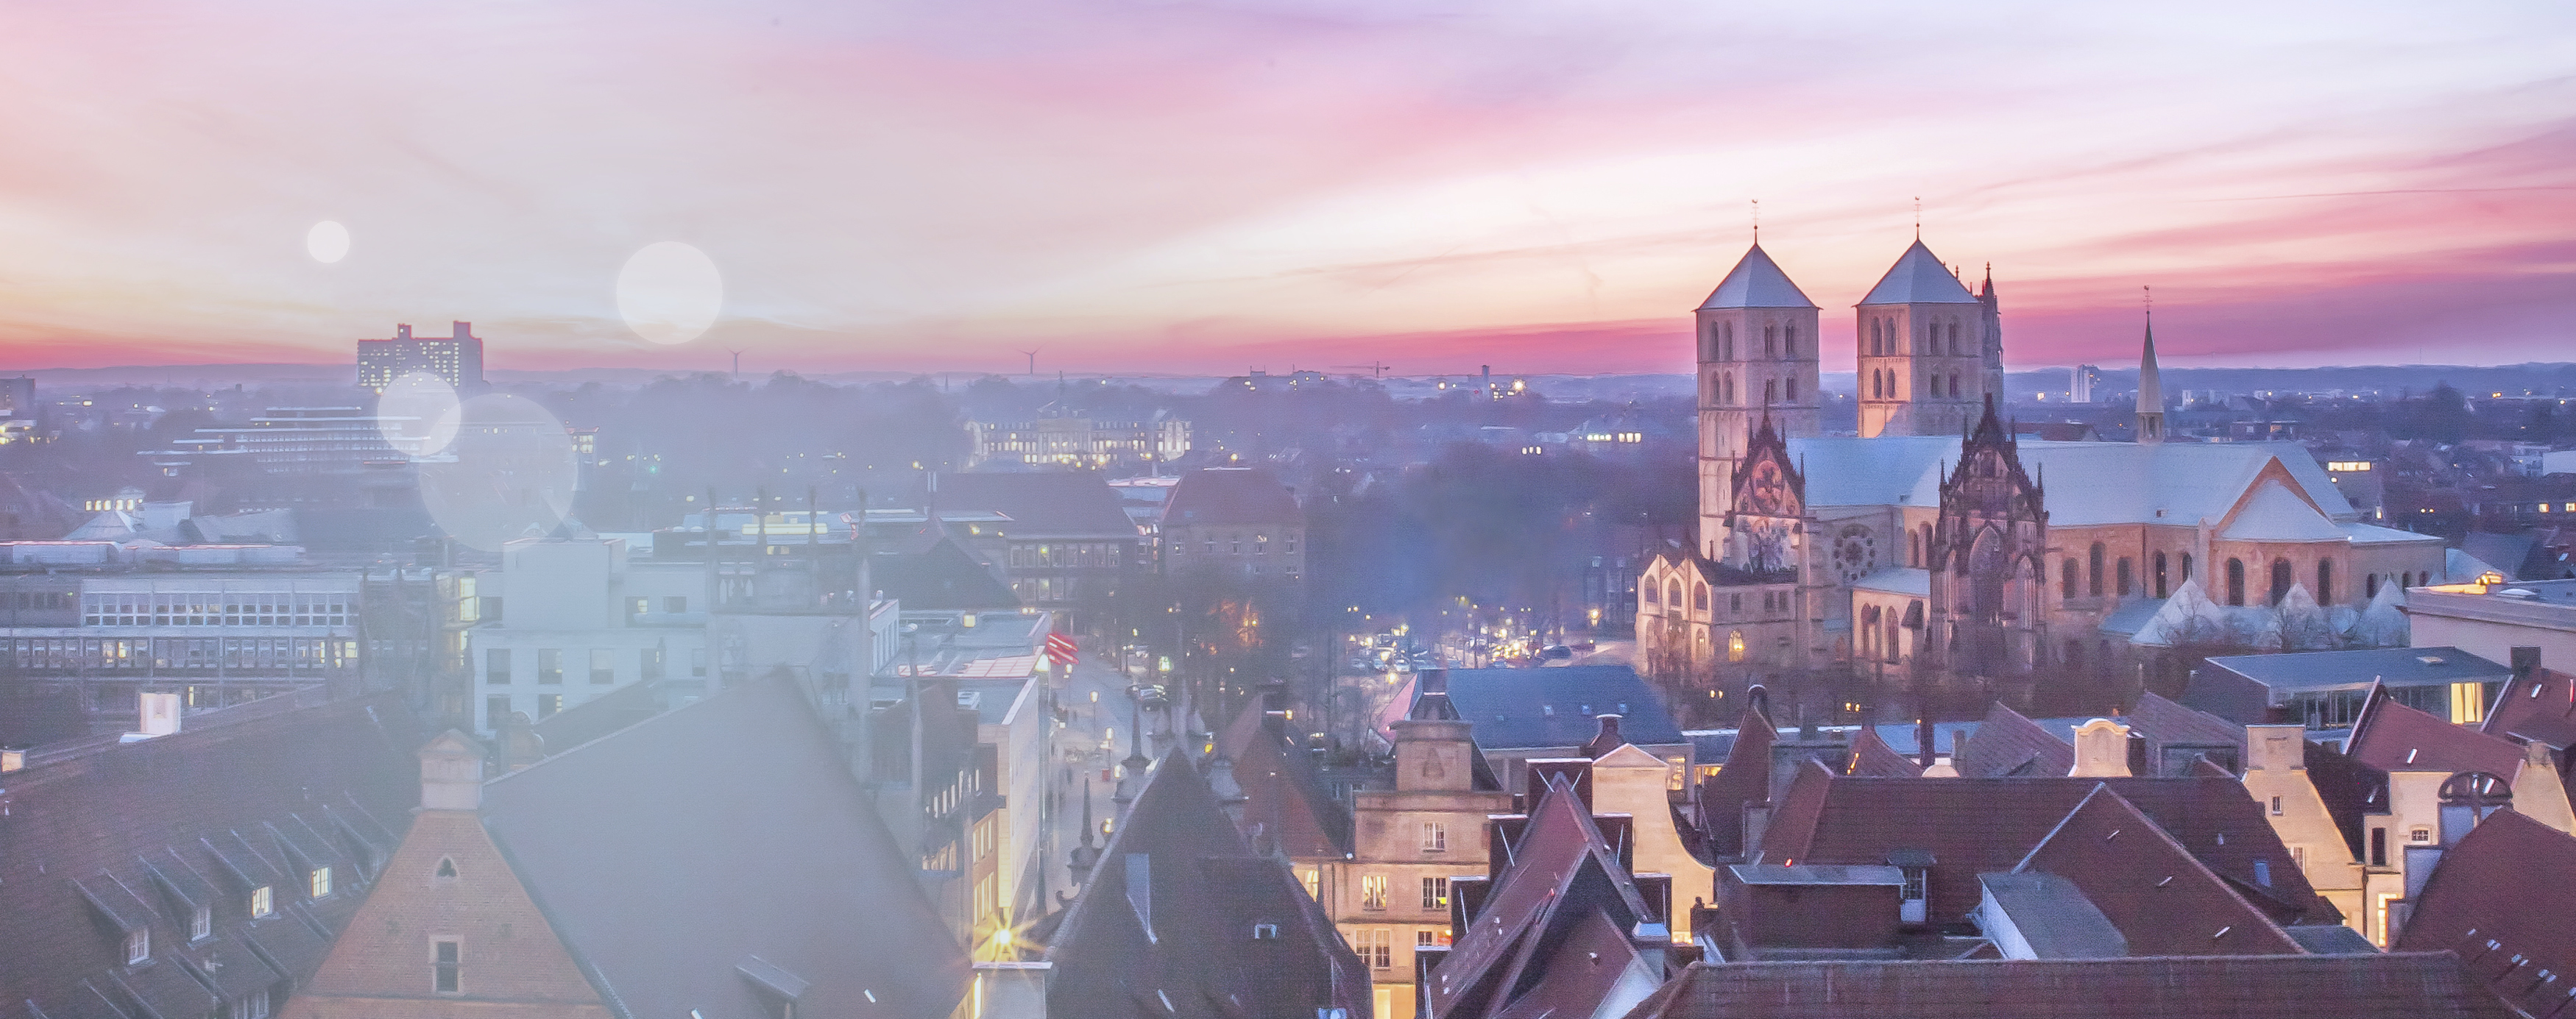 Ein schöner  lila- und rosafarbener Sonnenuntergang aus Sicht des münsterischen Stadthauses zeigt die Dächer von Münster, inklusive des St.-Paulus-Doms.